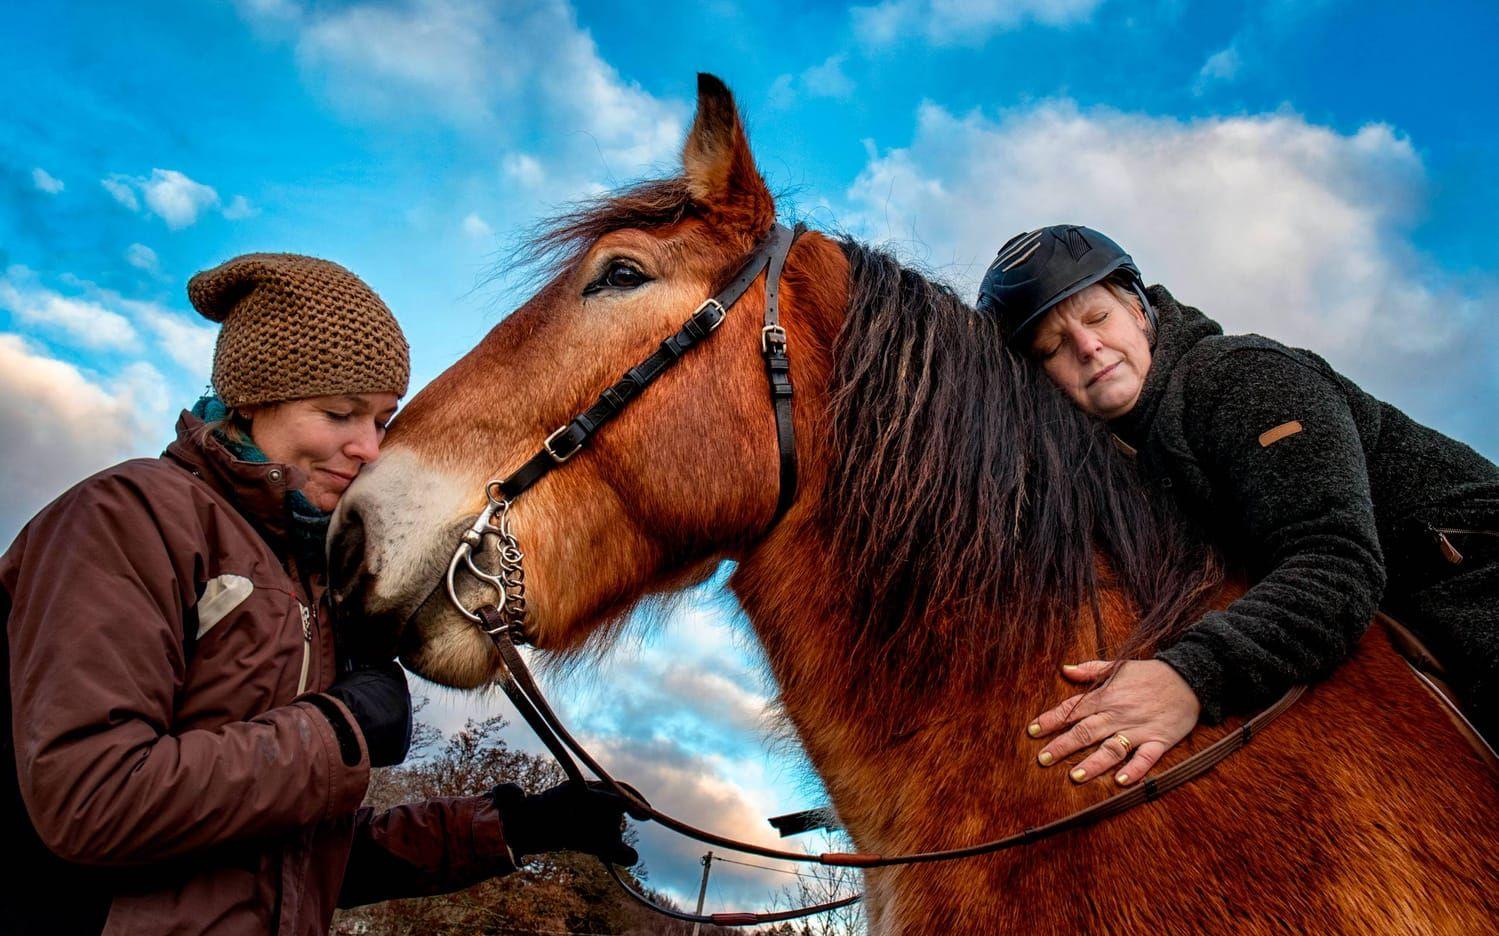 Det är en skön känsla att få uppleva kontakten med ett varmt, tryggt djur. Dessutom kan det leda till bättre hälsa. På hästen är det självklart att man måste vara medveten om sin egen kropp. Sjukgymnast Petra Gunnarsson håller i tyglarna medan Carina Hofling ger ardennerhästen Julle en kram. Bilder: Lisa Thanner.